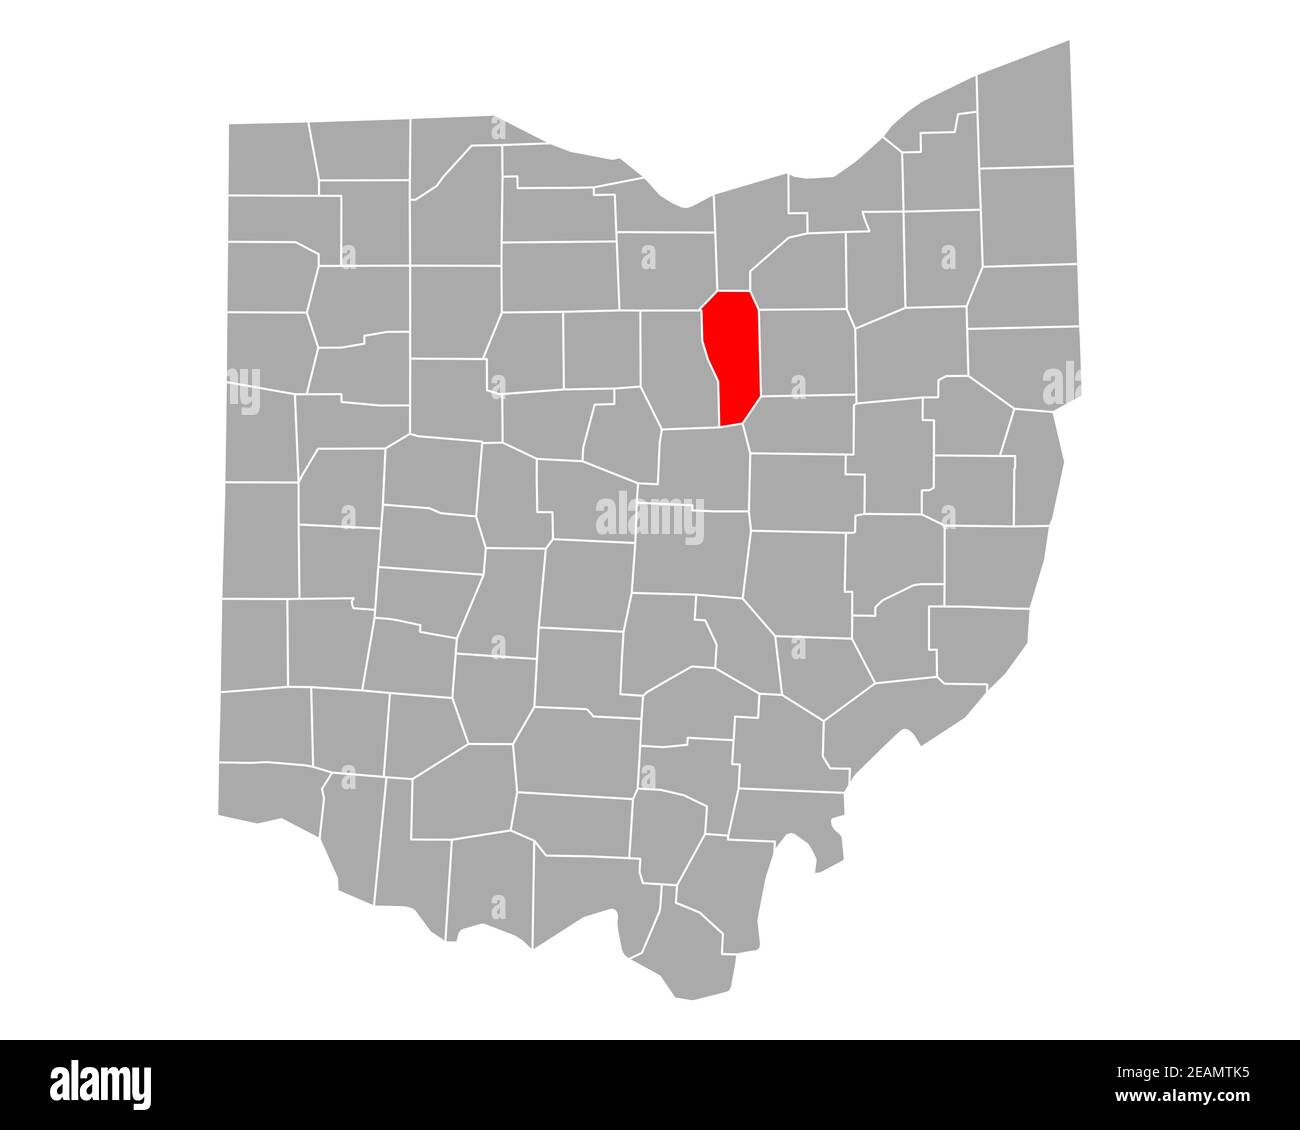 Map Of Ashland In Ohio 2EAMTK5 